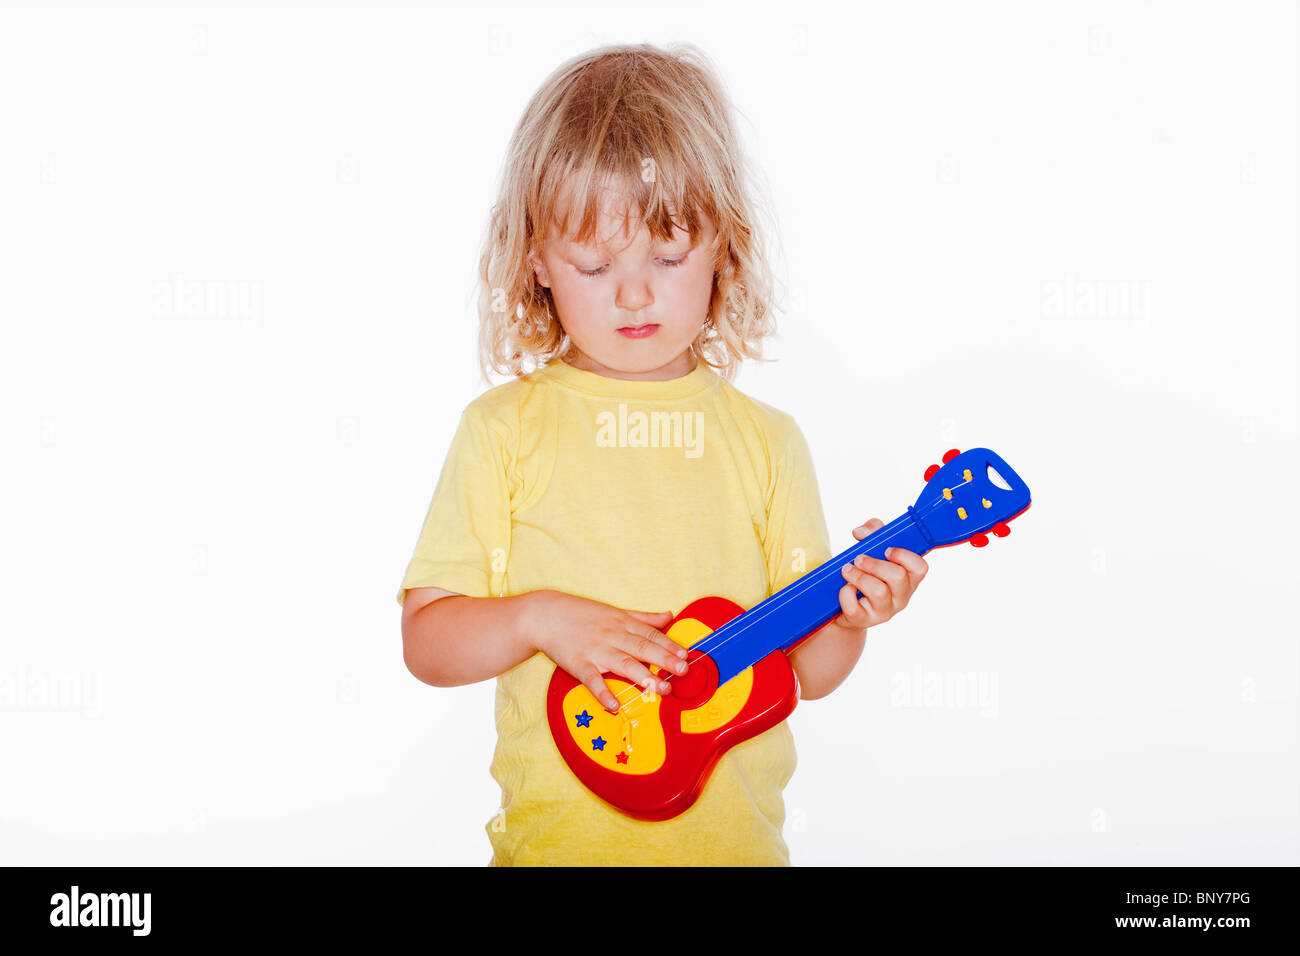 Junge mit langen blonden Haaren spielen mit Spielzeug-Gitarre - isoliert auf weiss Stockfoto